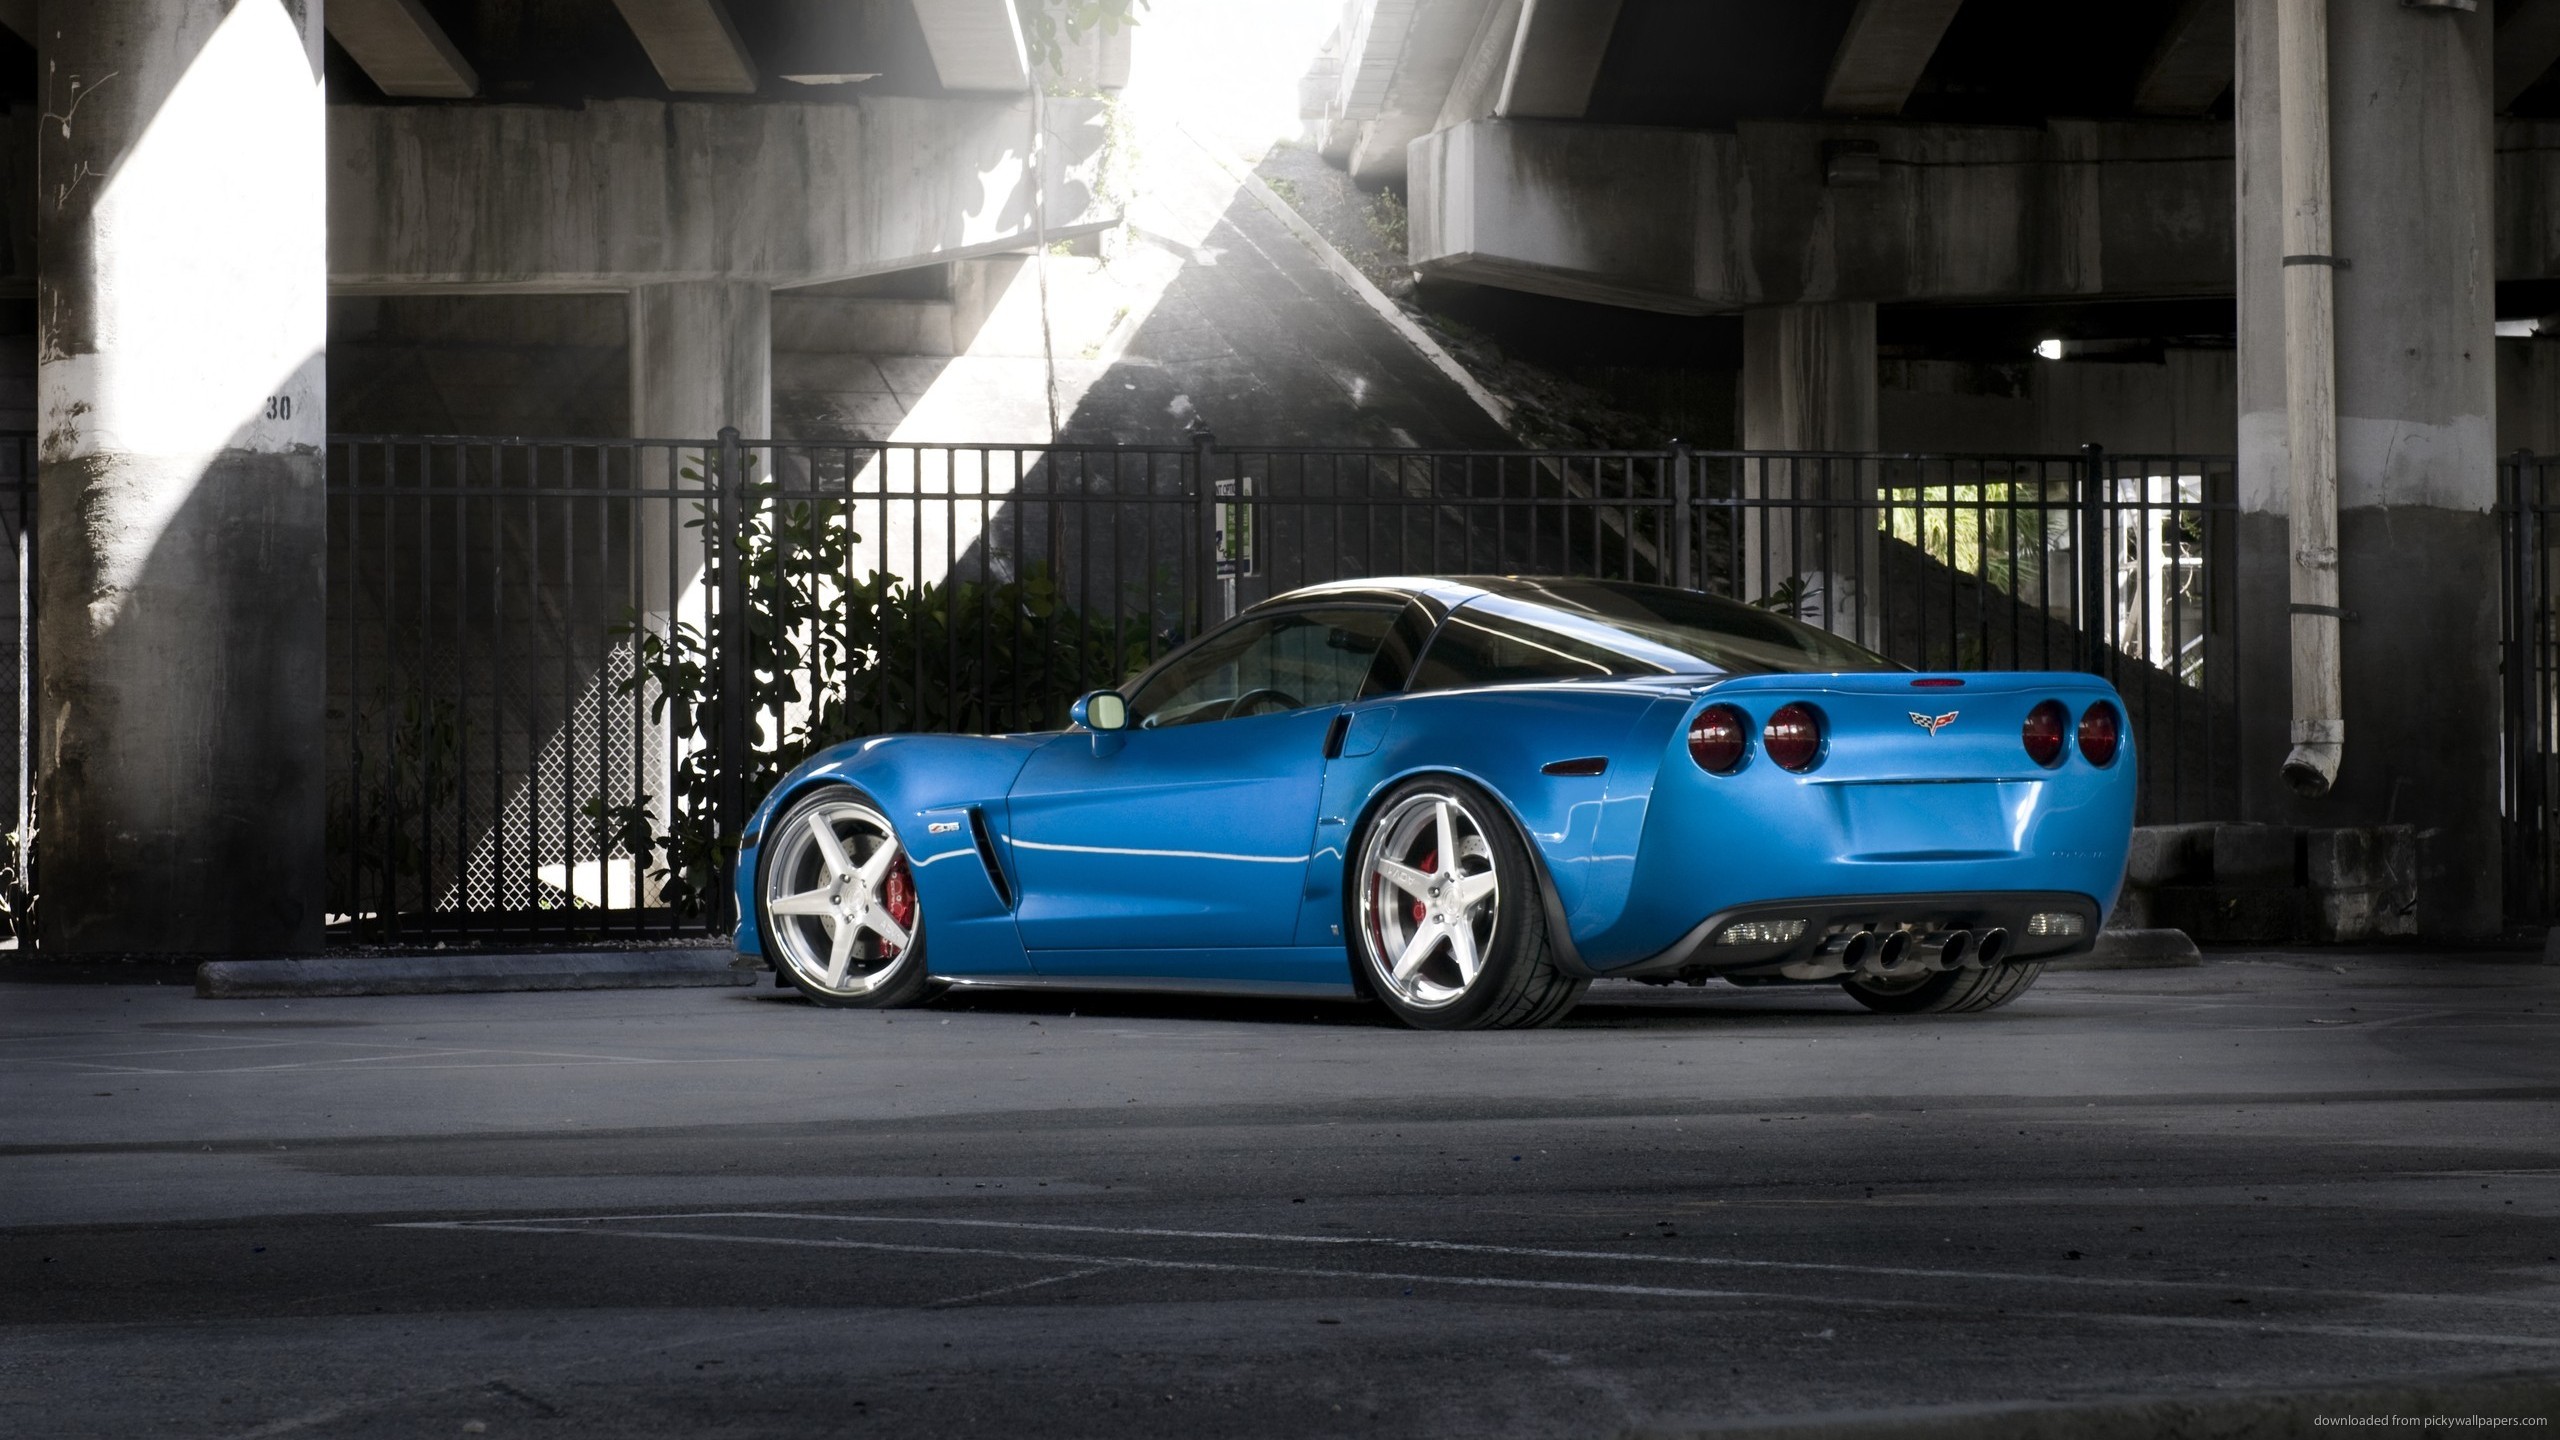 Corvette C6 Zr1 Wallpaper Best Blue Chevrolet